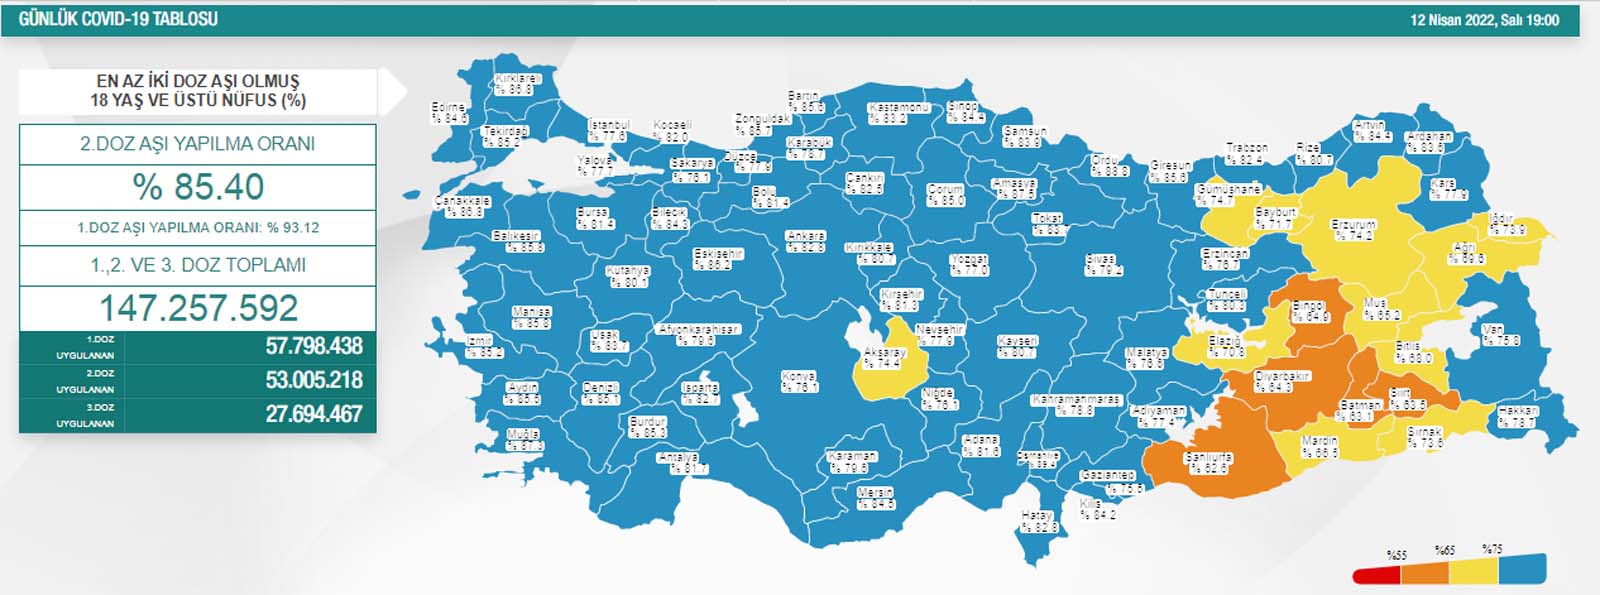 Son dakika: 15 Nisan 2022 Cuma Türkiye Günlük Koronavirüs Tablosu | Son 24 saat korona tablosu